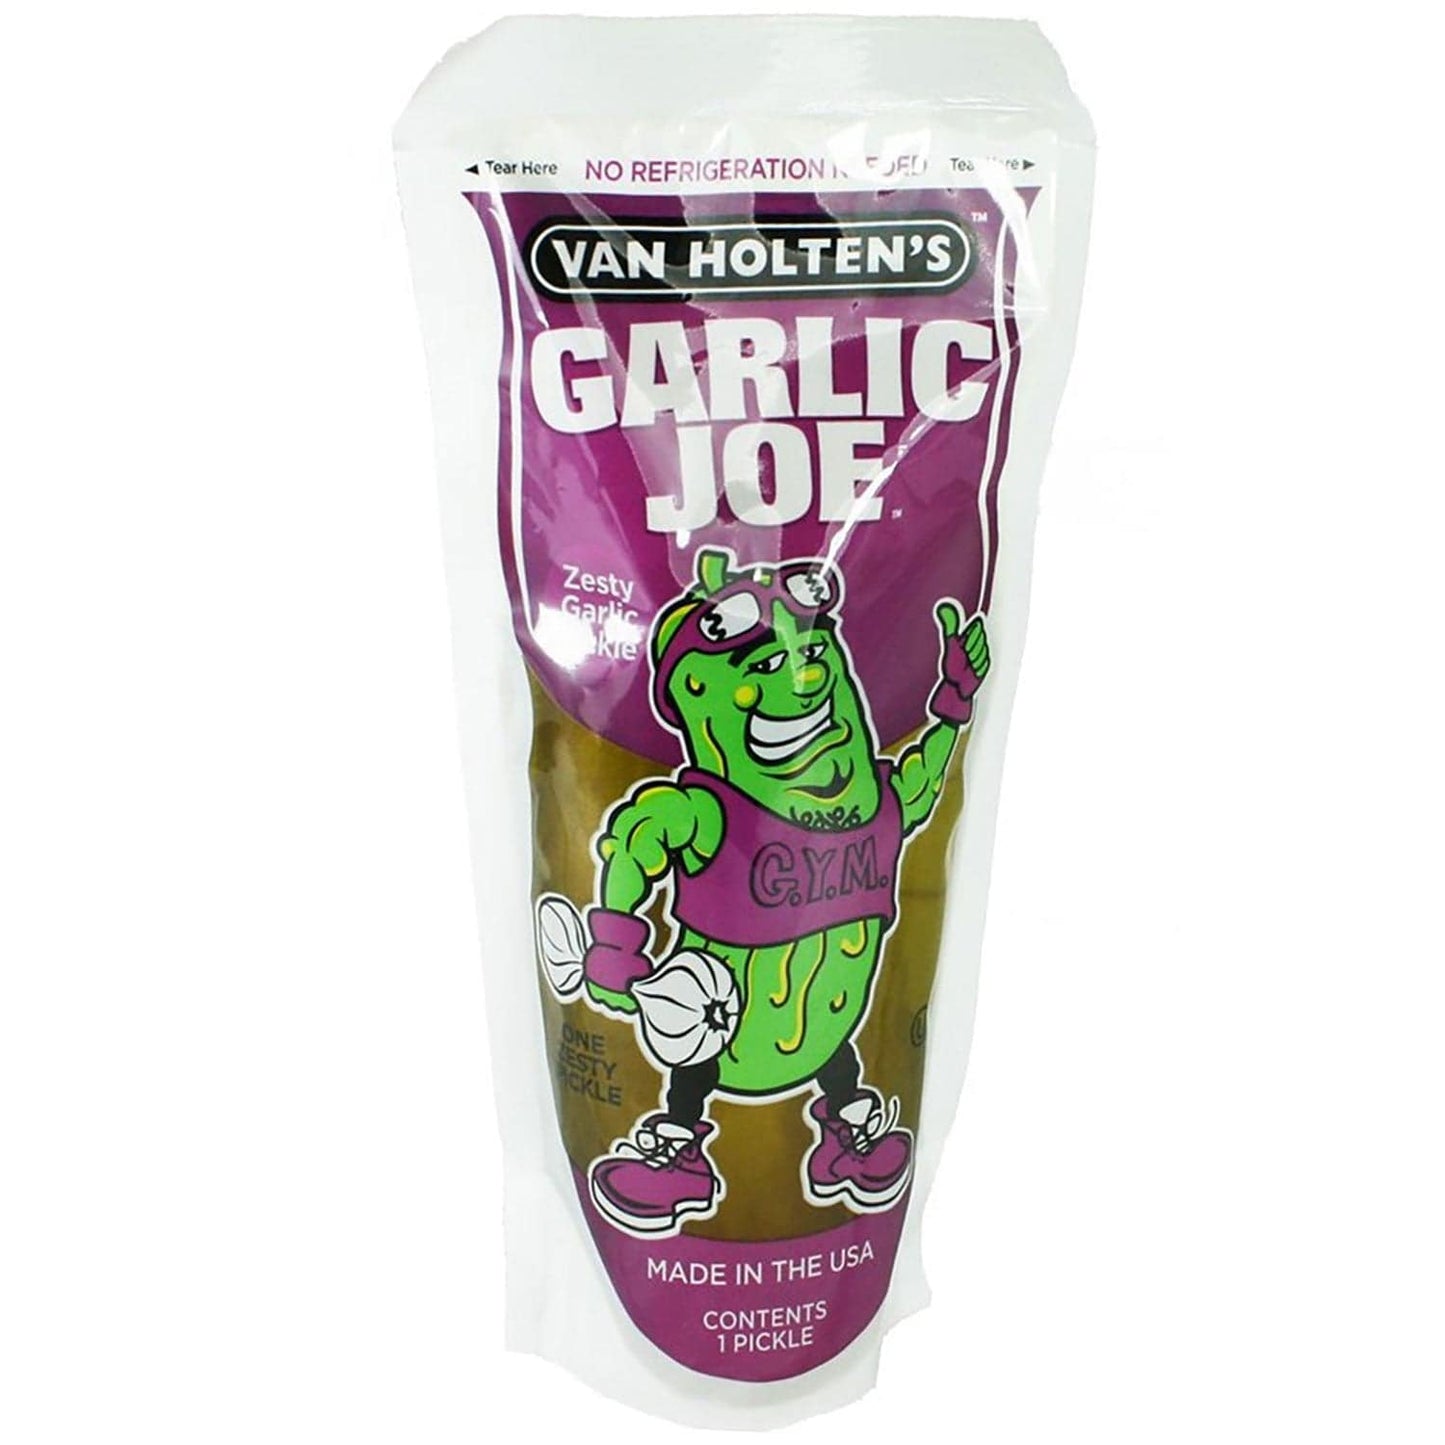 Van Holten's Garlic Joe Eingelegte Essiggurke mit Knoblauchgeschmack - Candyshop.ch